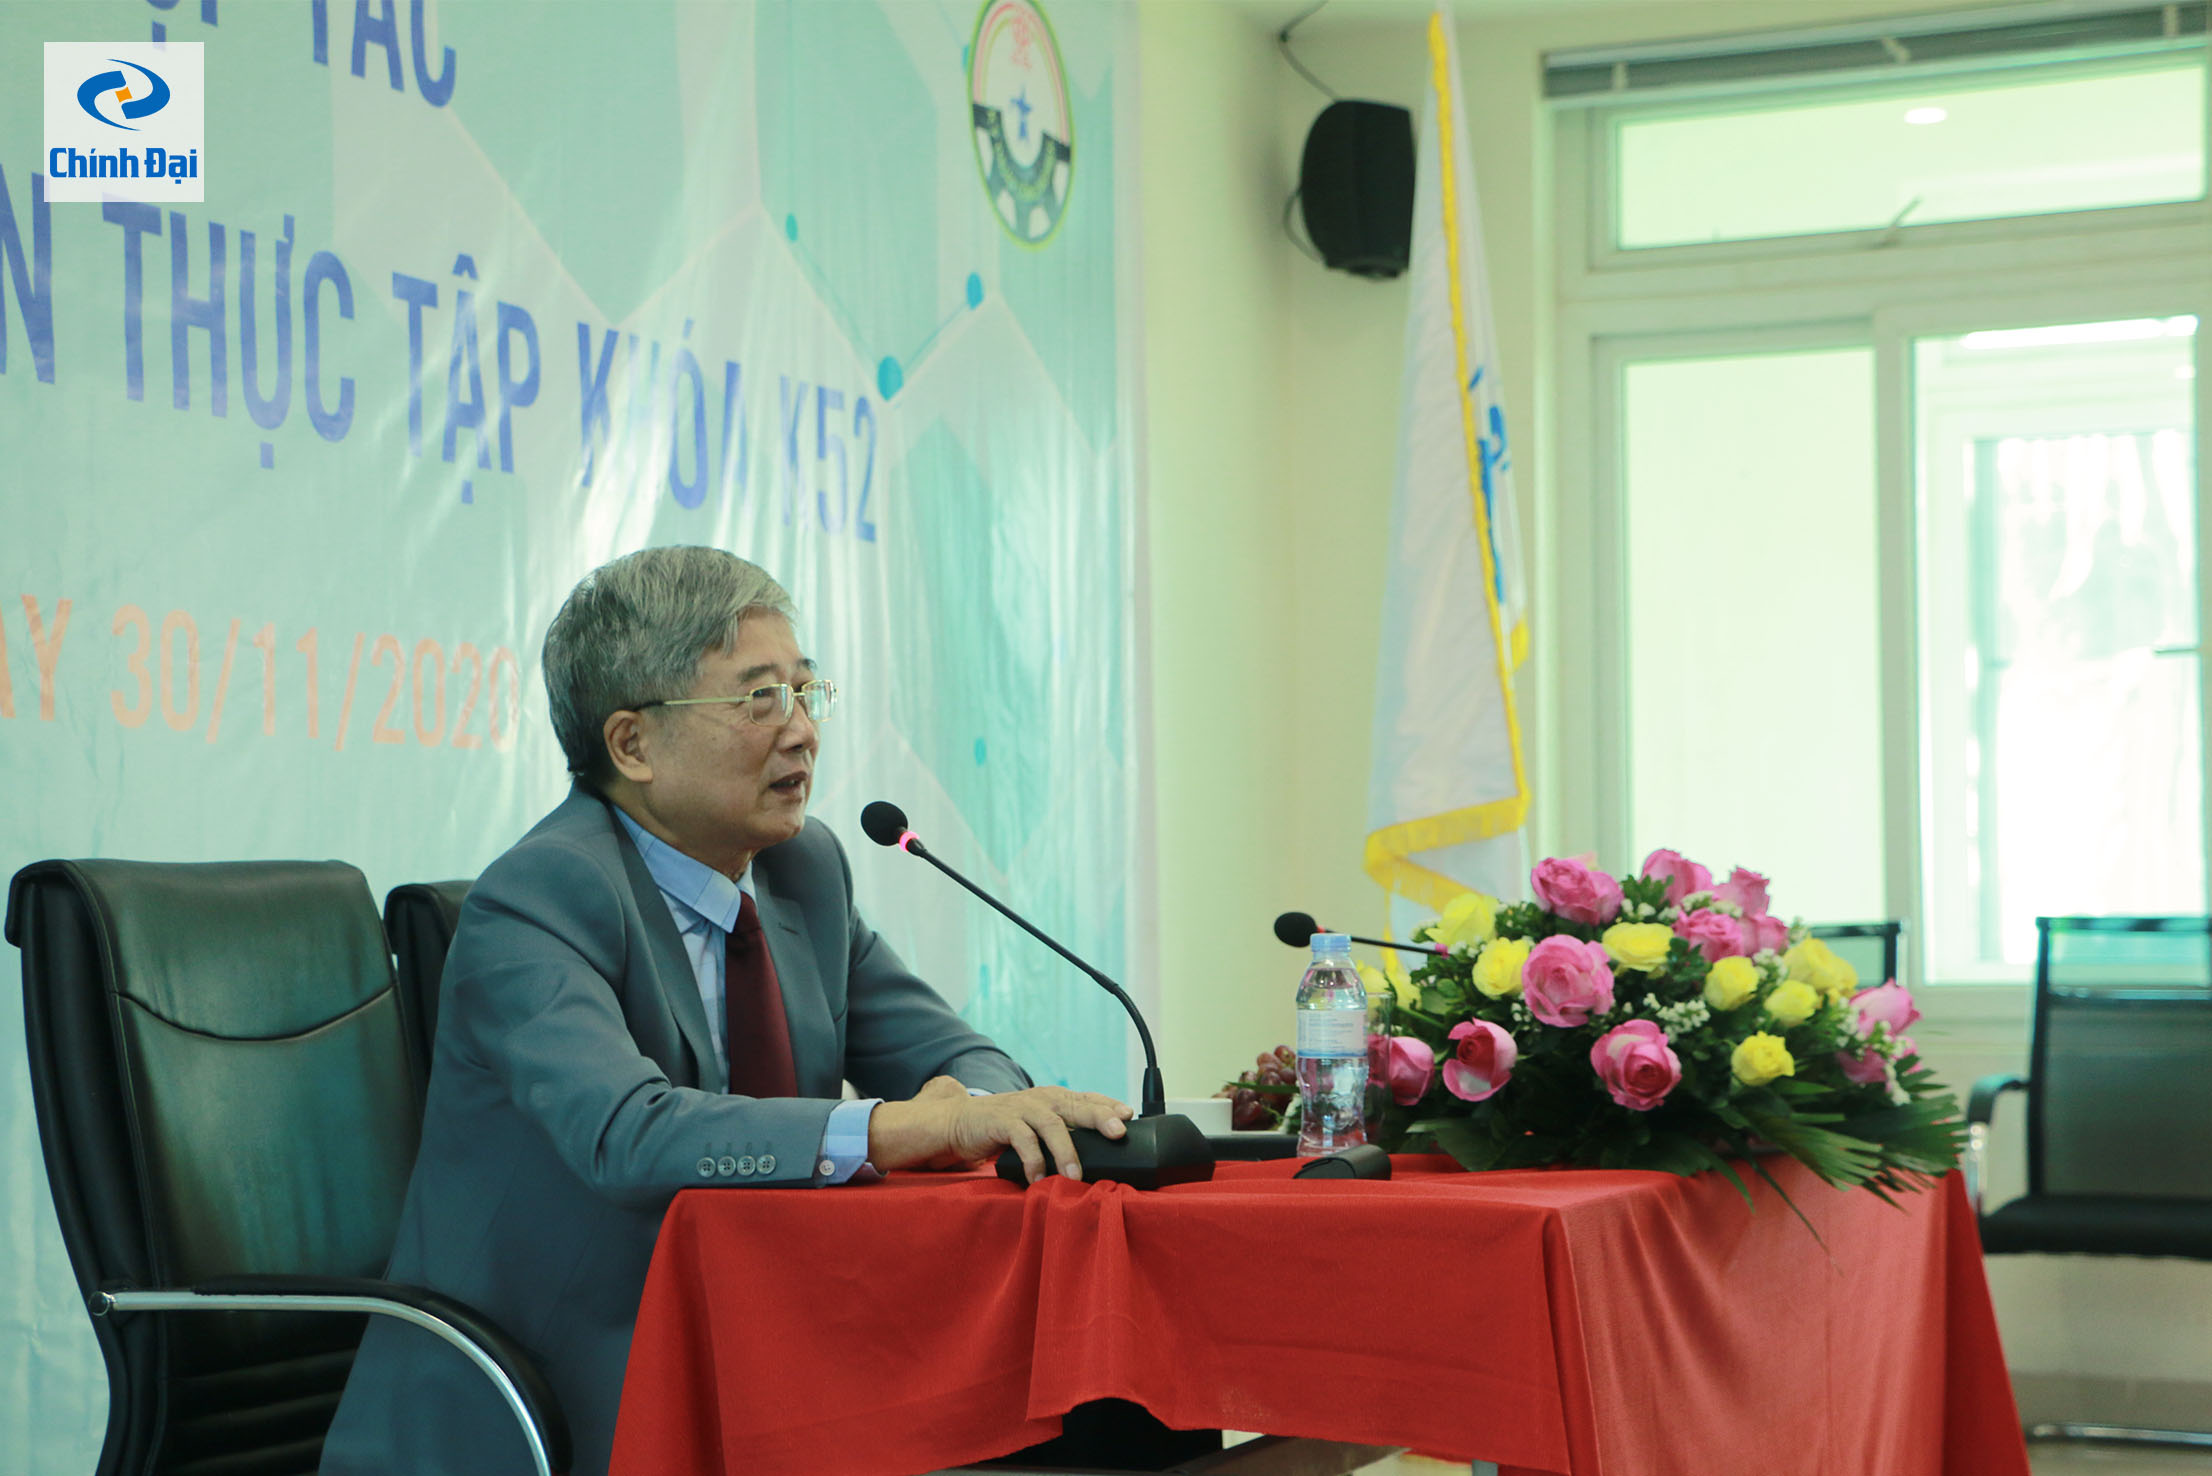 Ông Đồng Văn Bột, Tổng Giám đốc Công ty TNHH Công nghiệp Chính Đại phát biểu khai mạc hội nghị